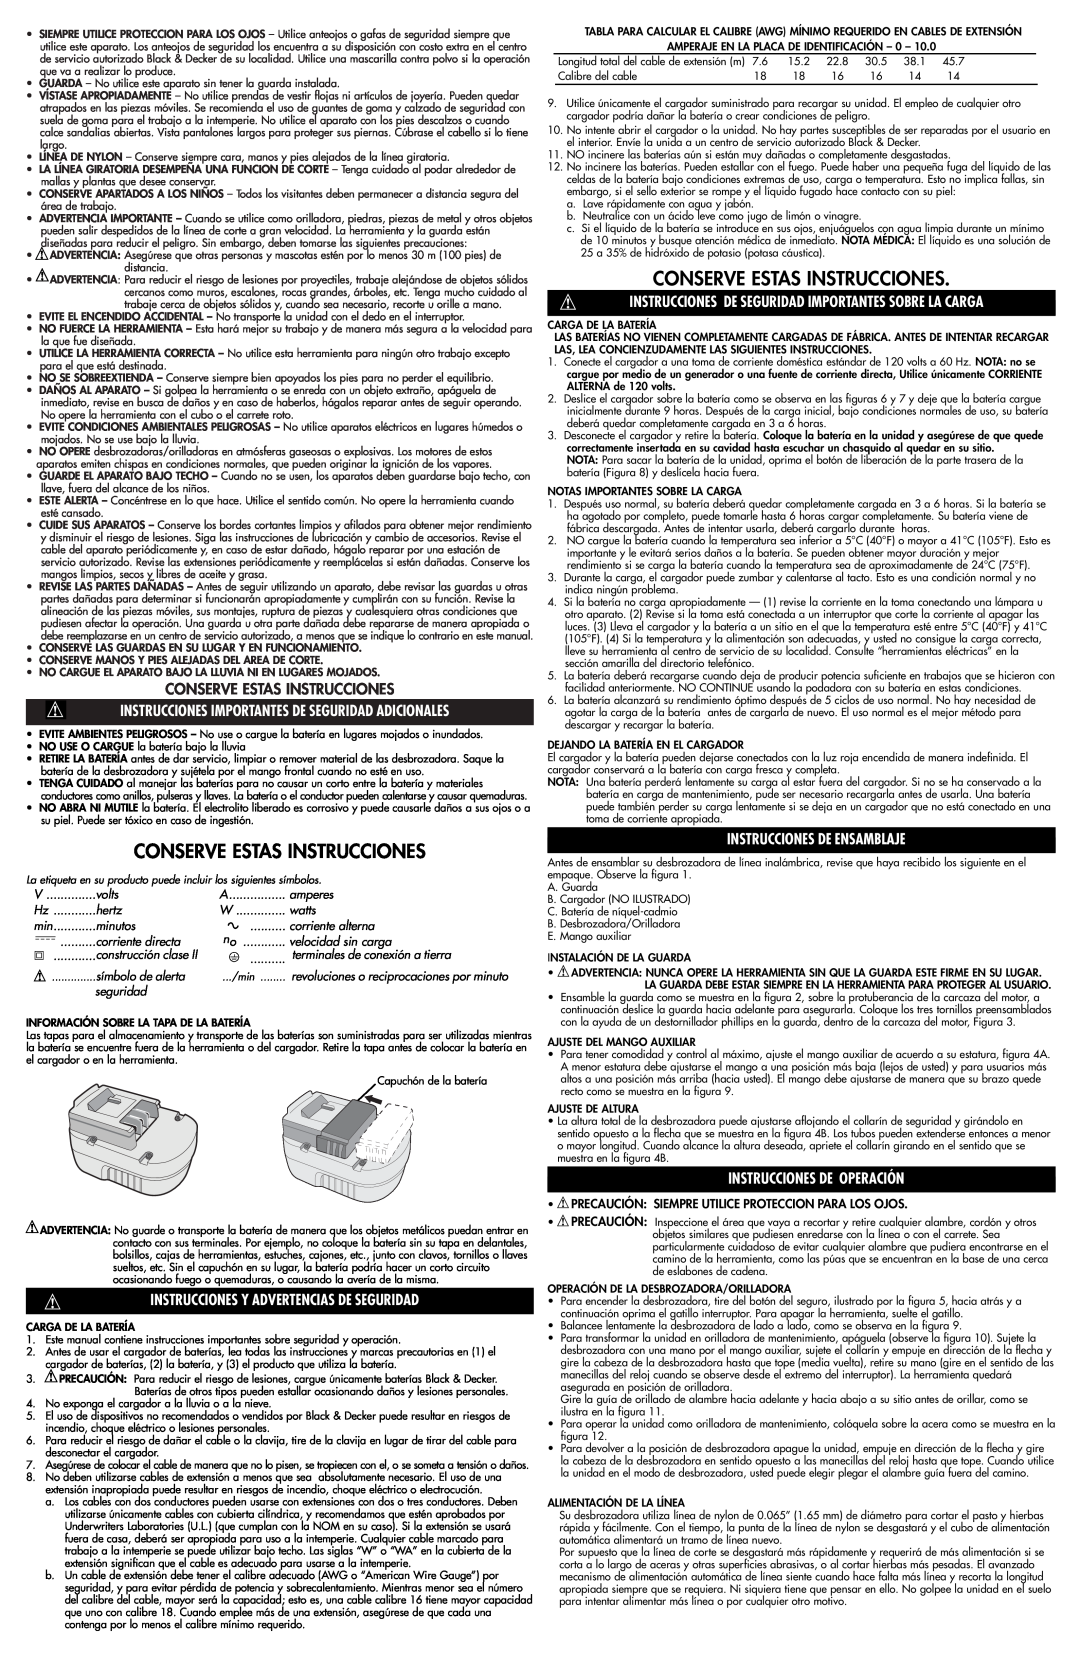 Black & Decker NST-2018 instruction manual Conserve Estas Instrucciones, Instrucciones Y Advertencias De Seguridad 